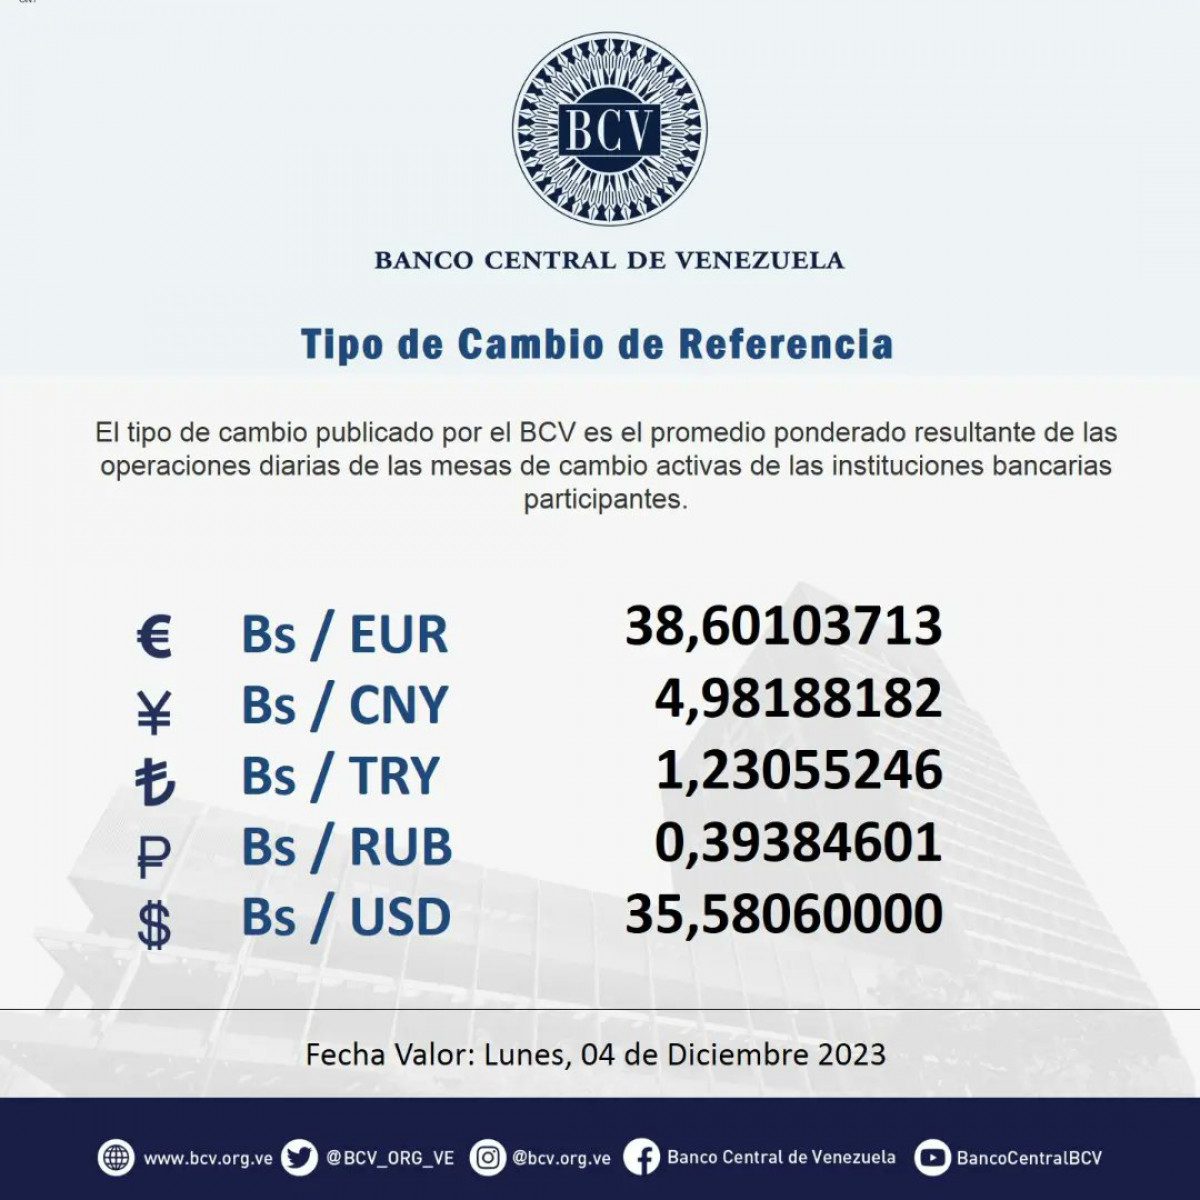 dolartoday en venezuela precio del dolar este sabado 2 de diciembre de 2023 laverdaddemonagas.com bcv777